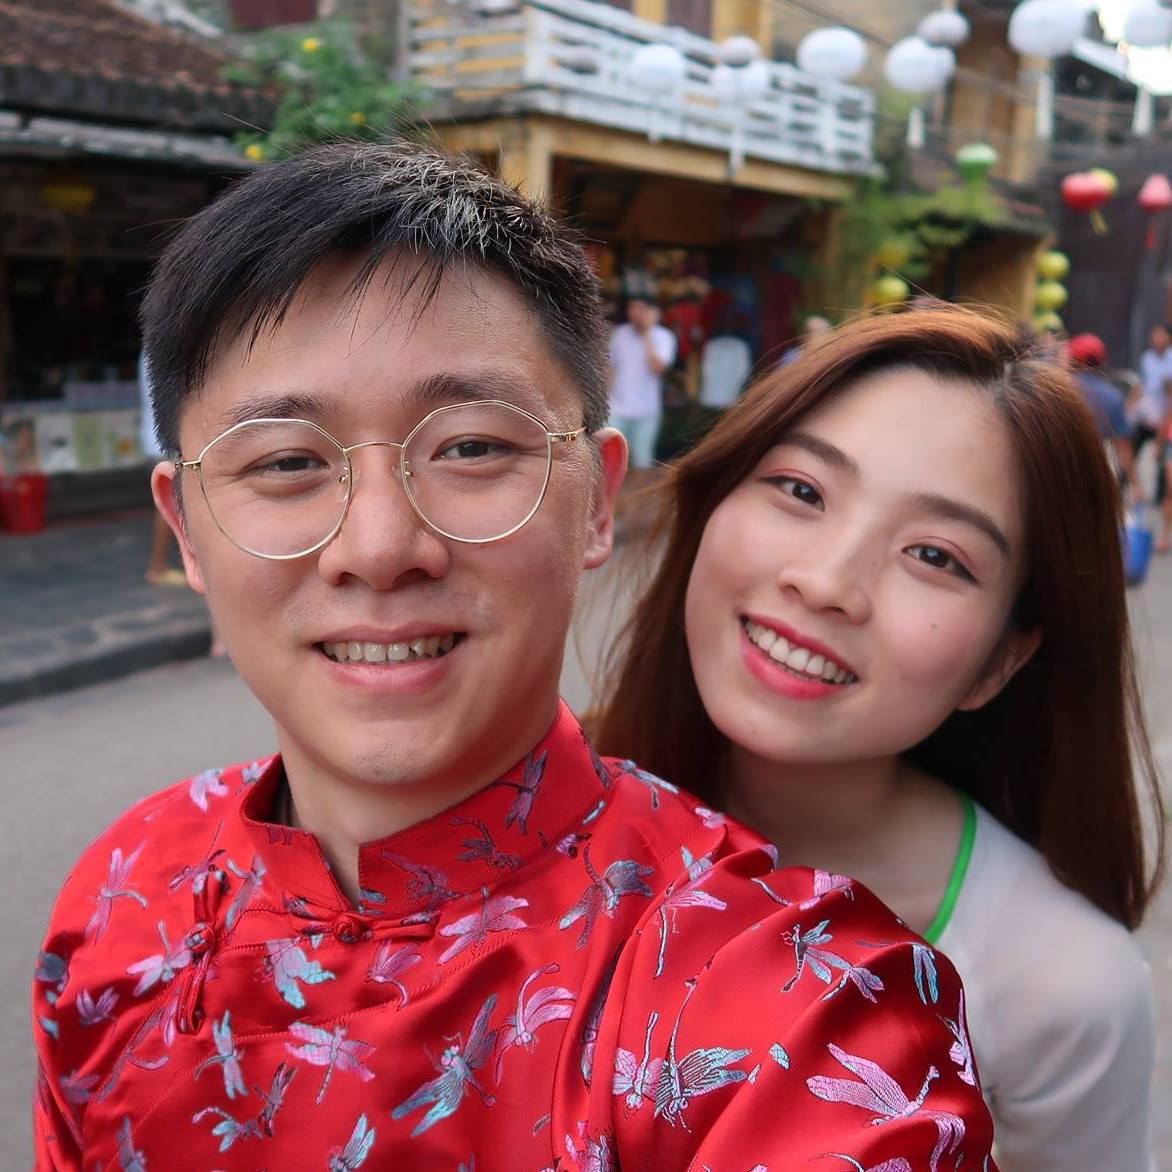 Nguyễn Thu Hằng dan suaminya bersama-sama menjalankan Channel YouTube Hang TV